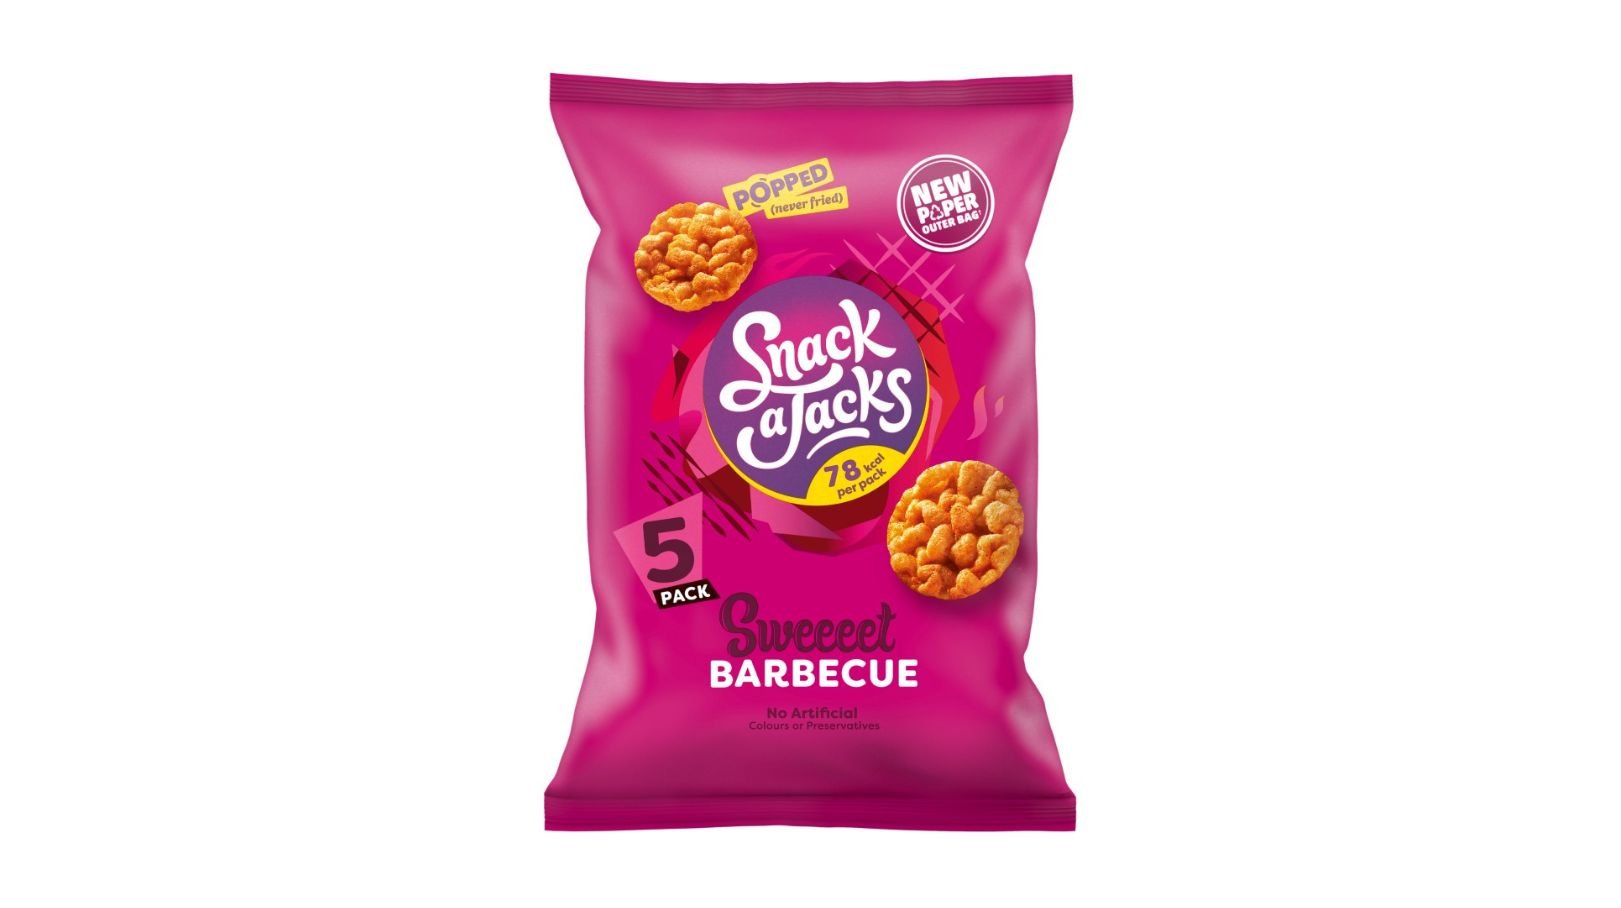 Walkers introduceert in Engeland nieuwe papieren zakken voor alle multipacks van Snack A Jacks